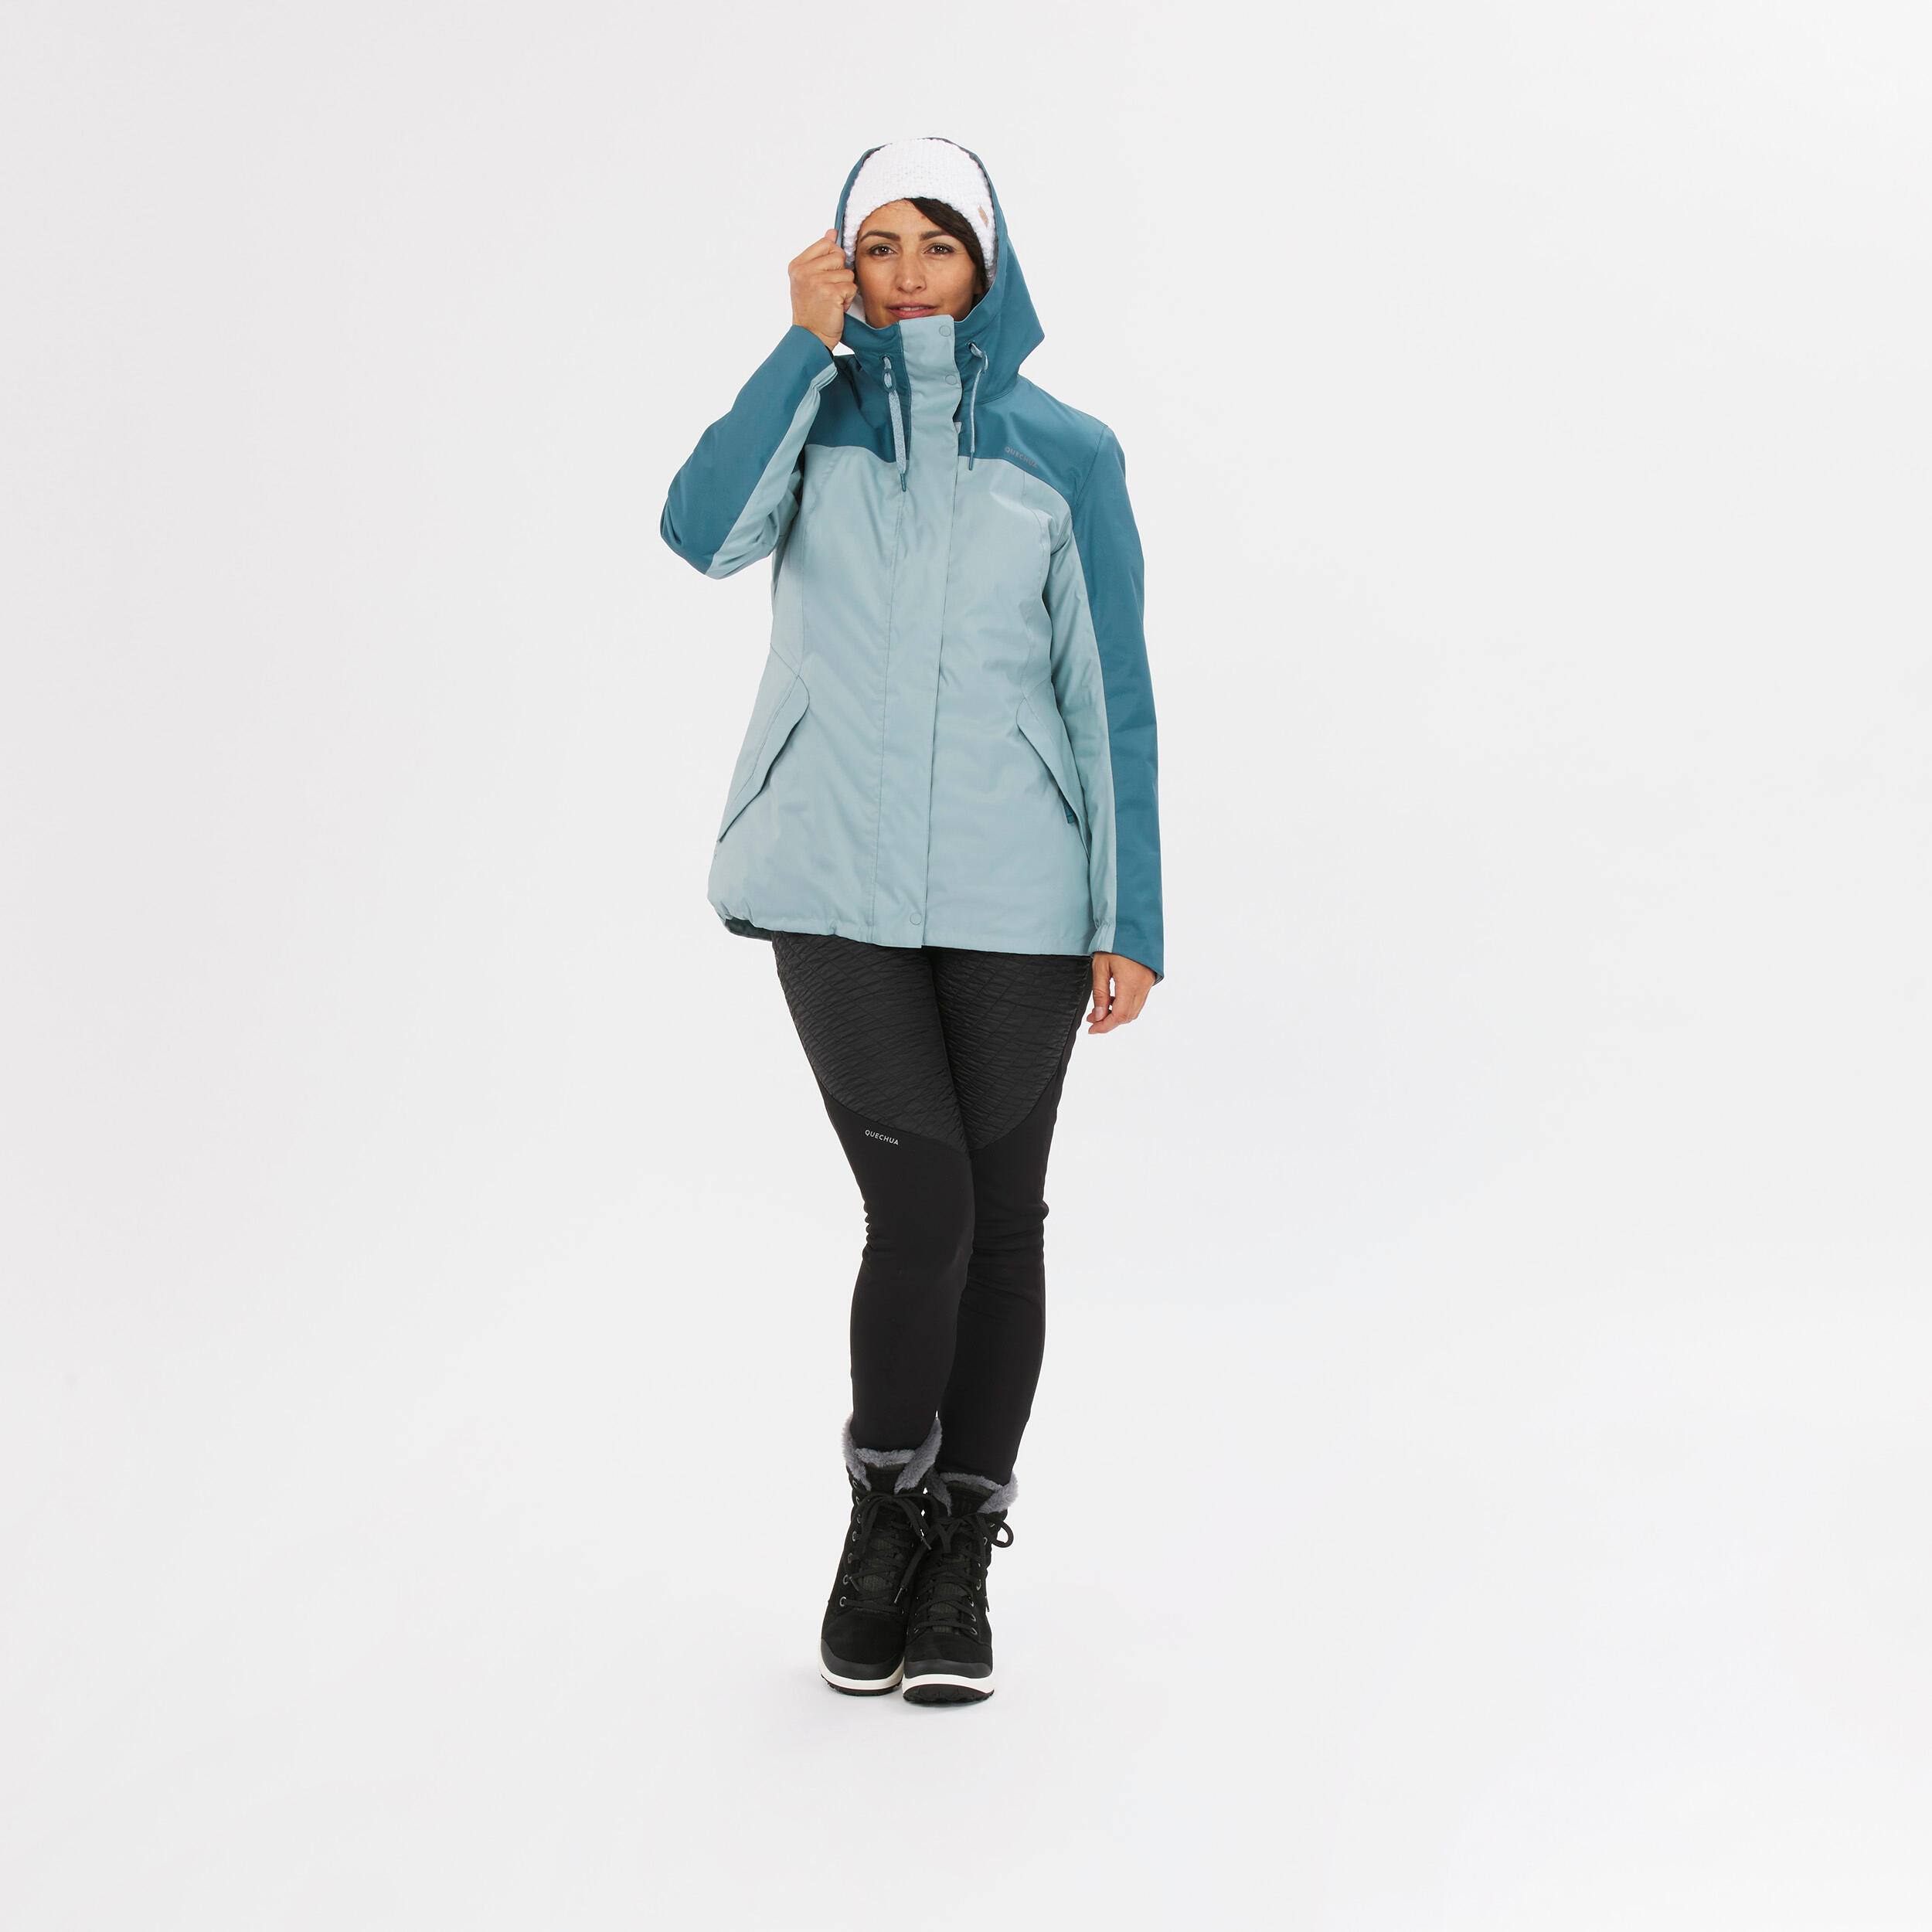 Women’s hiking waterproof winter jacket - SH500 -10°C 12/15